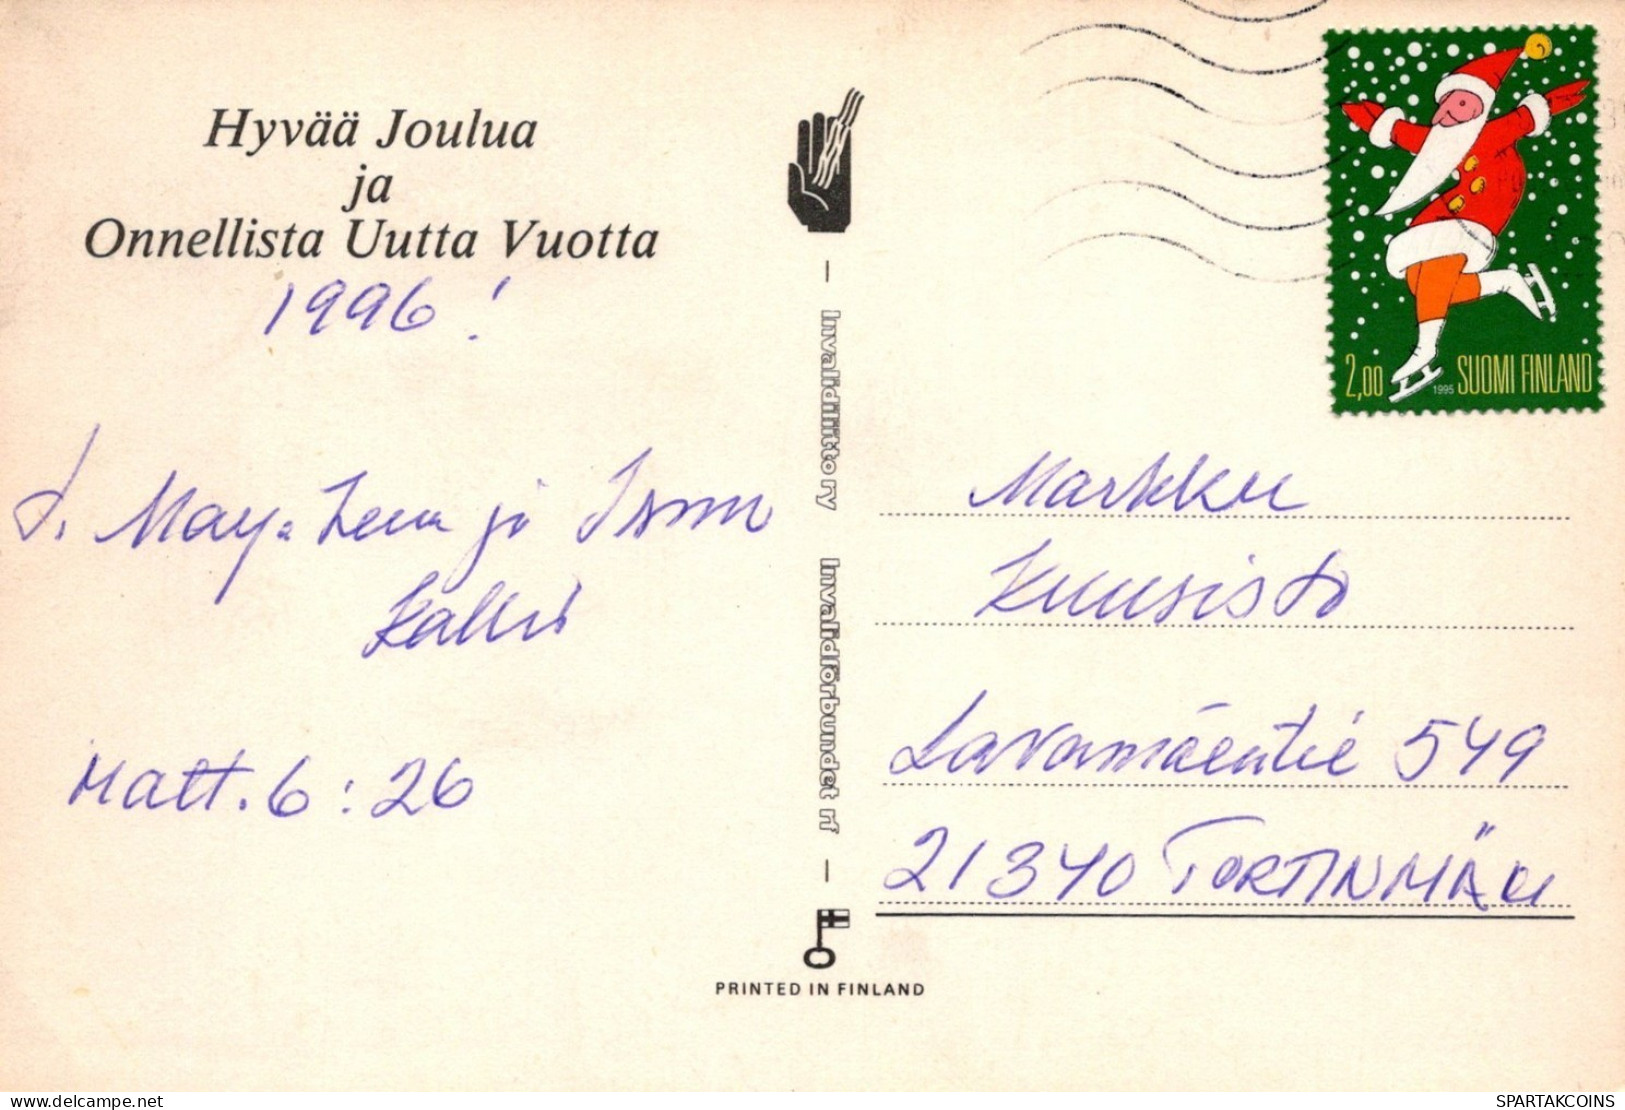 OISEAU Animaux Vintage Carte Postale CPSM #PAN002.FR - Birds